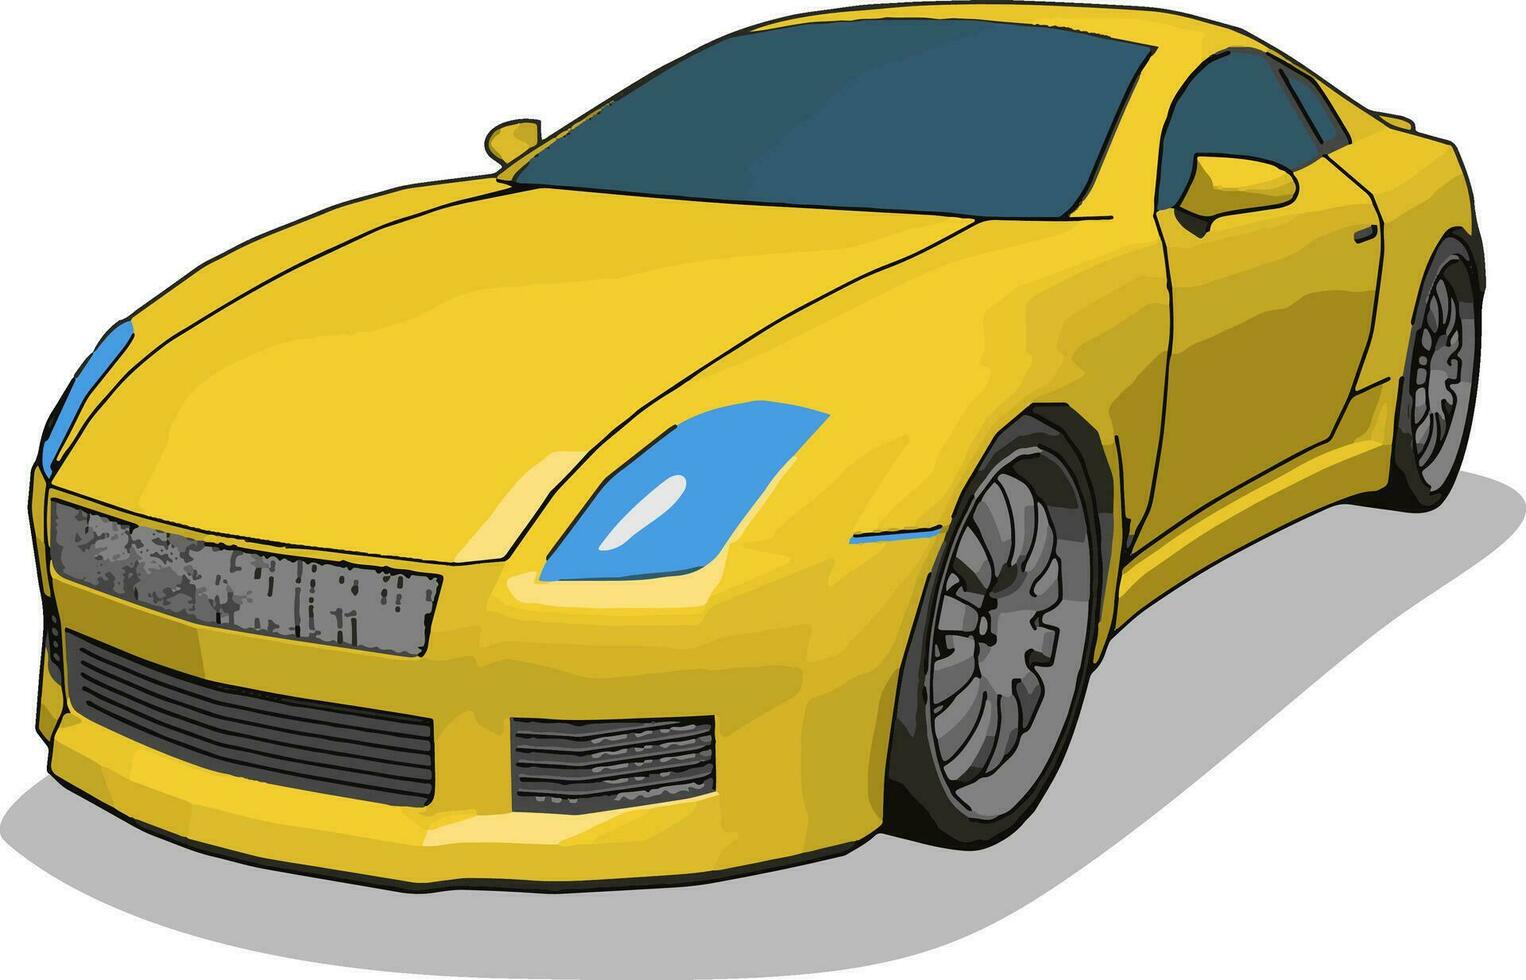 voiture de luxe jaune, illustration, vecteur sur fond blanc.